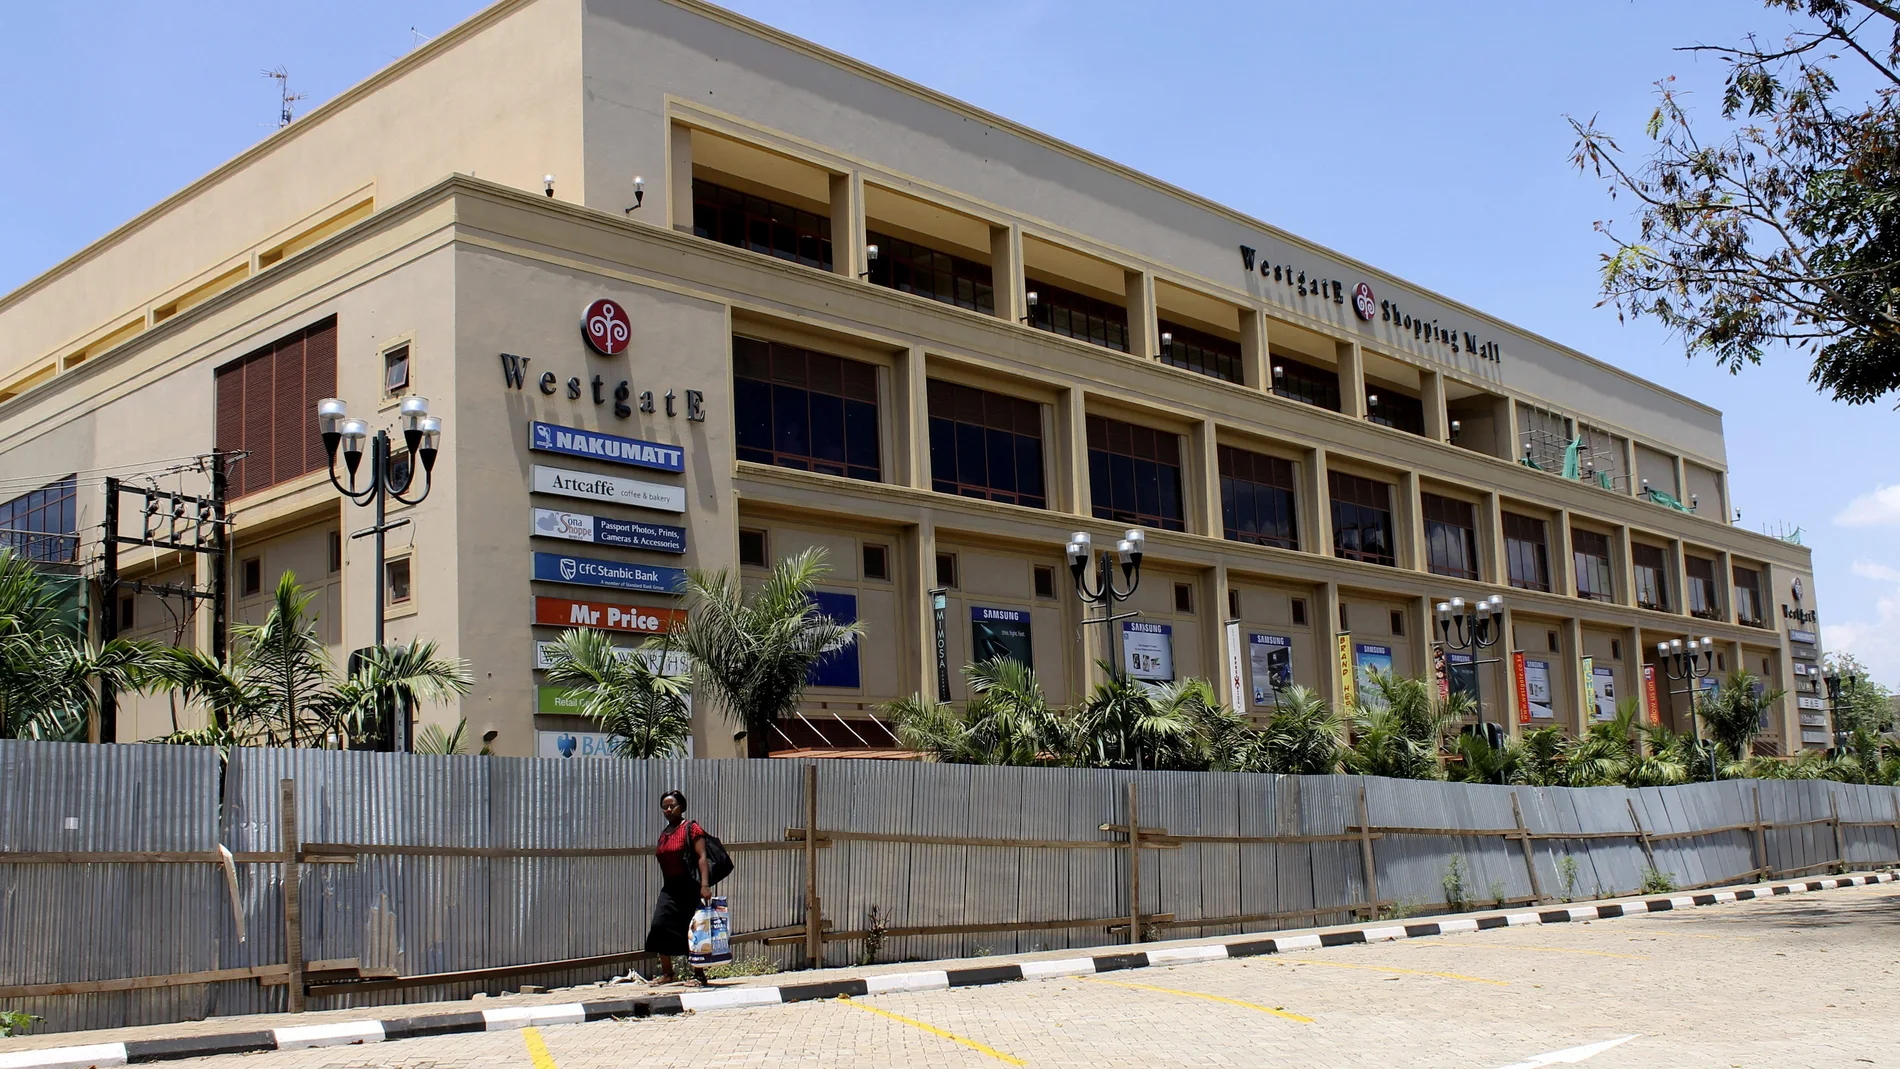 Centro comercial Westgate, asaltado hace un año por el grupo terrorista somalí Al Shabab